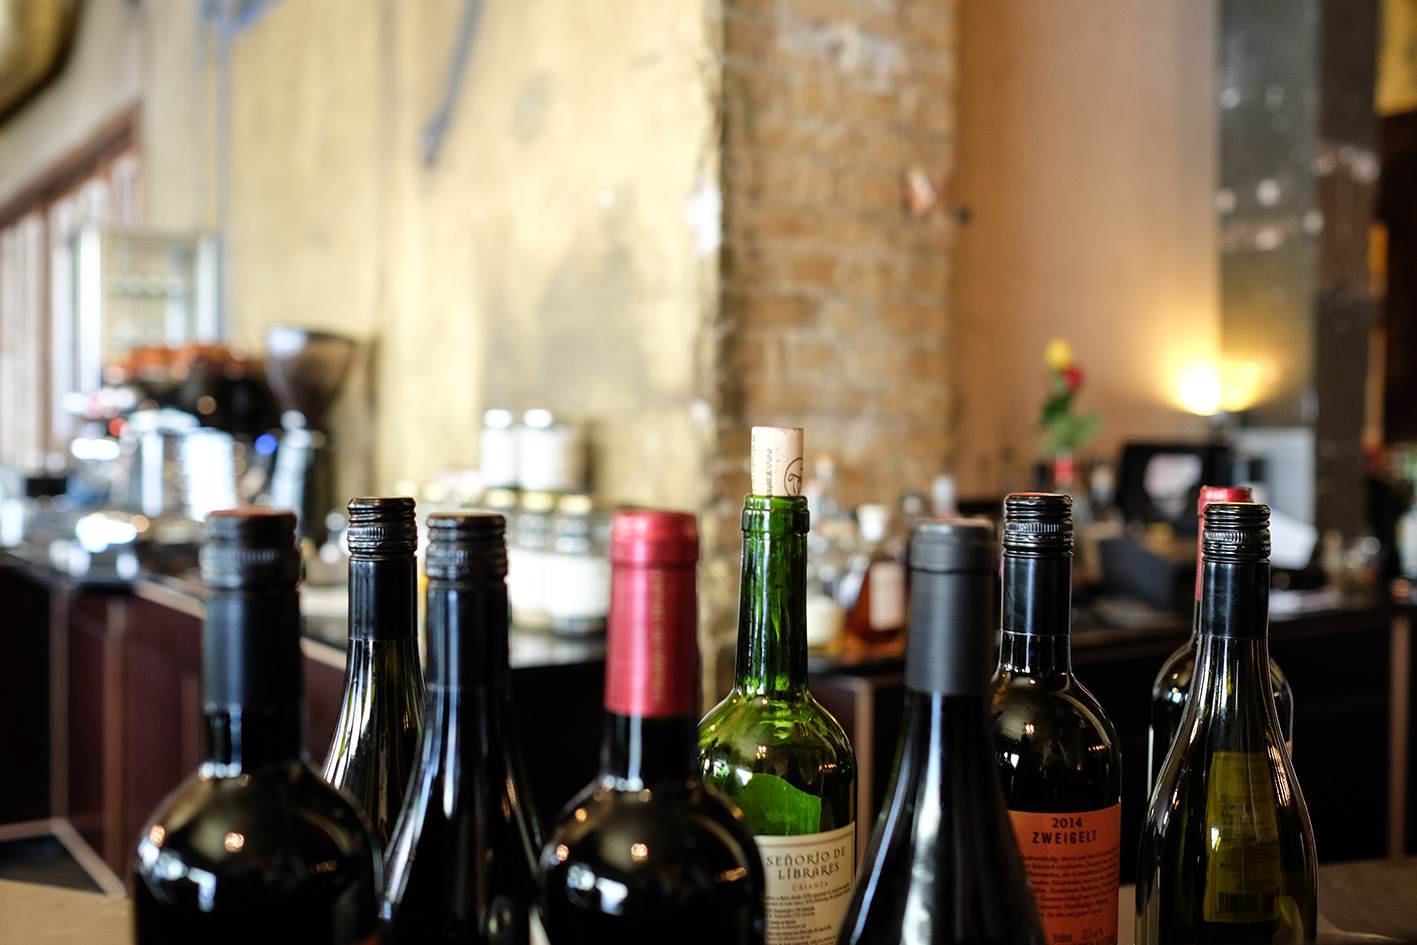 Wine bottles in a wine bar